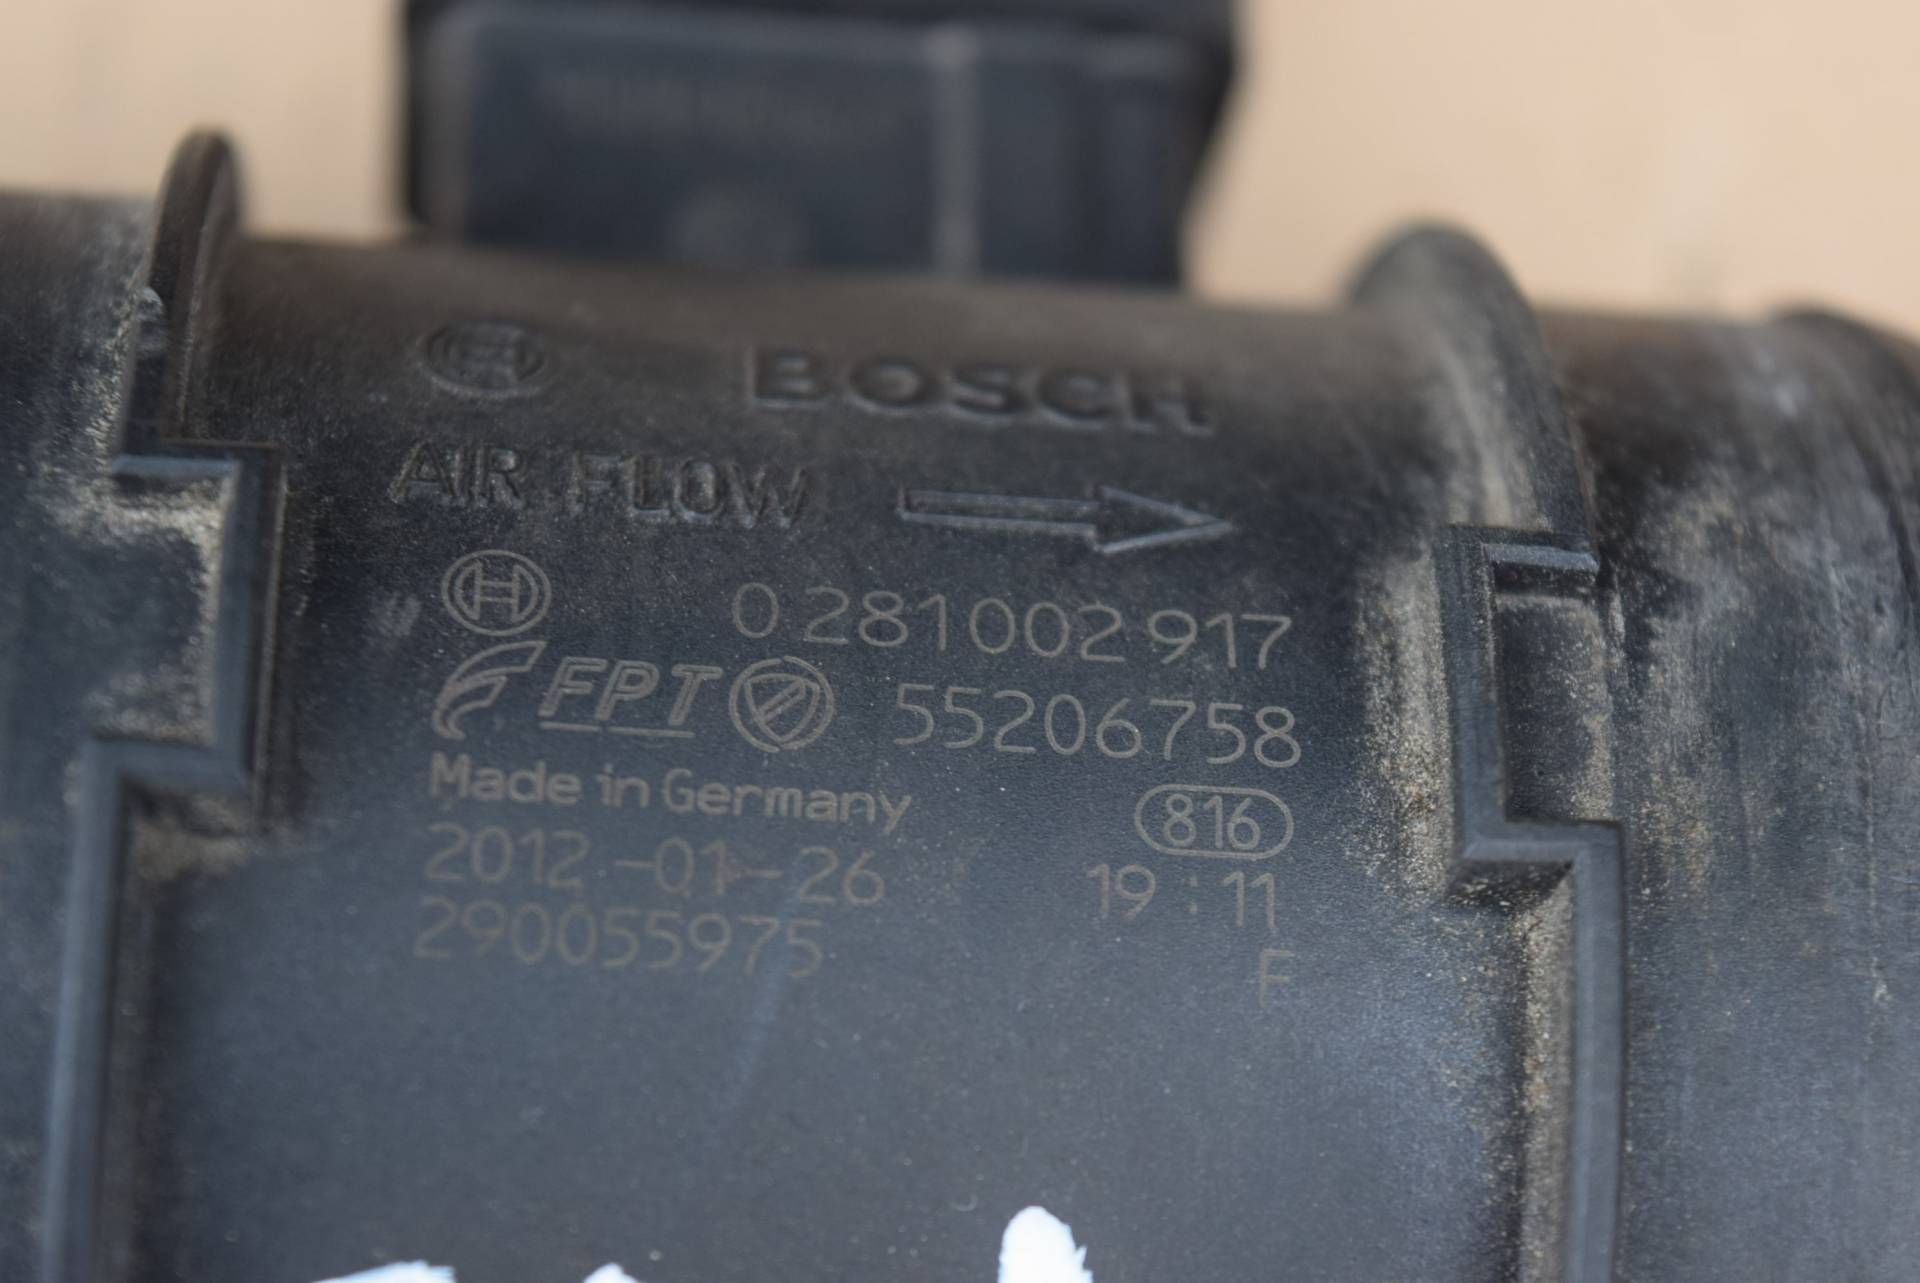 Расходомер воздуха к Fiat Doblo 0281002917,55206758, 2013, купить | DT-FD-1. Фото #2